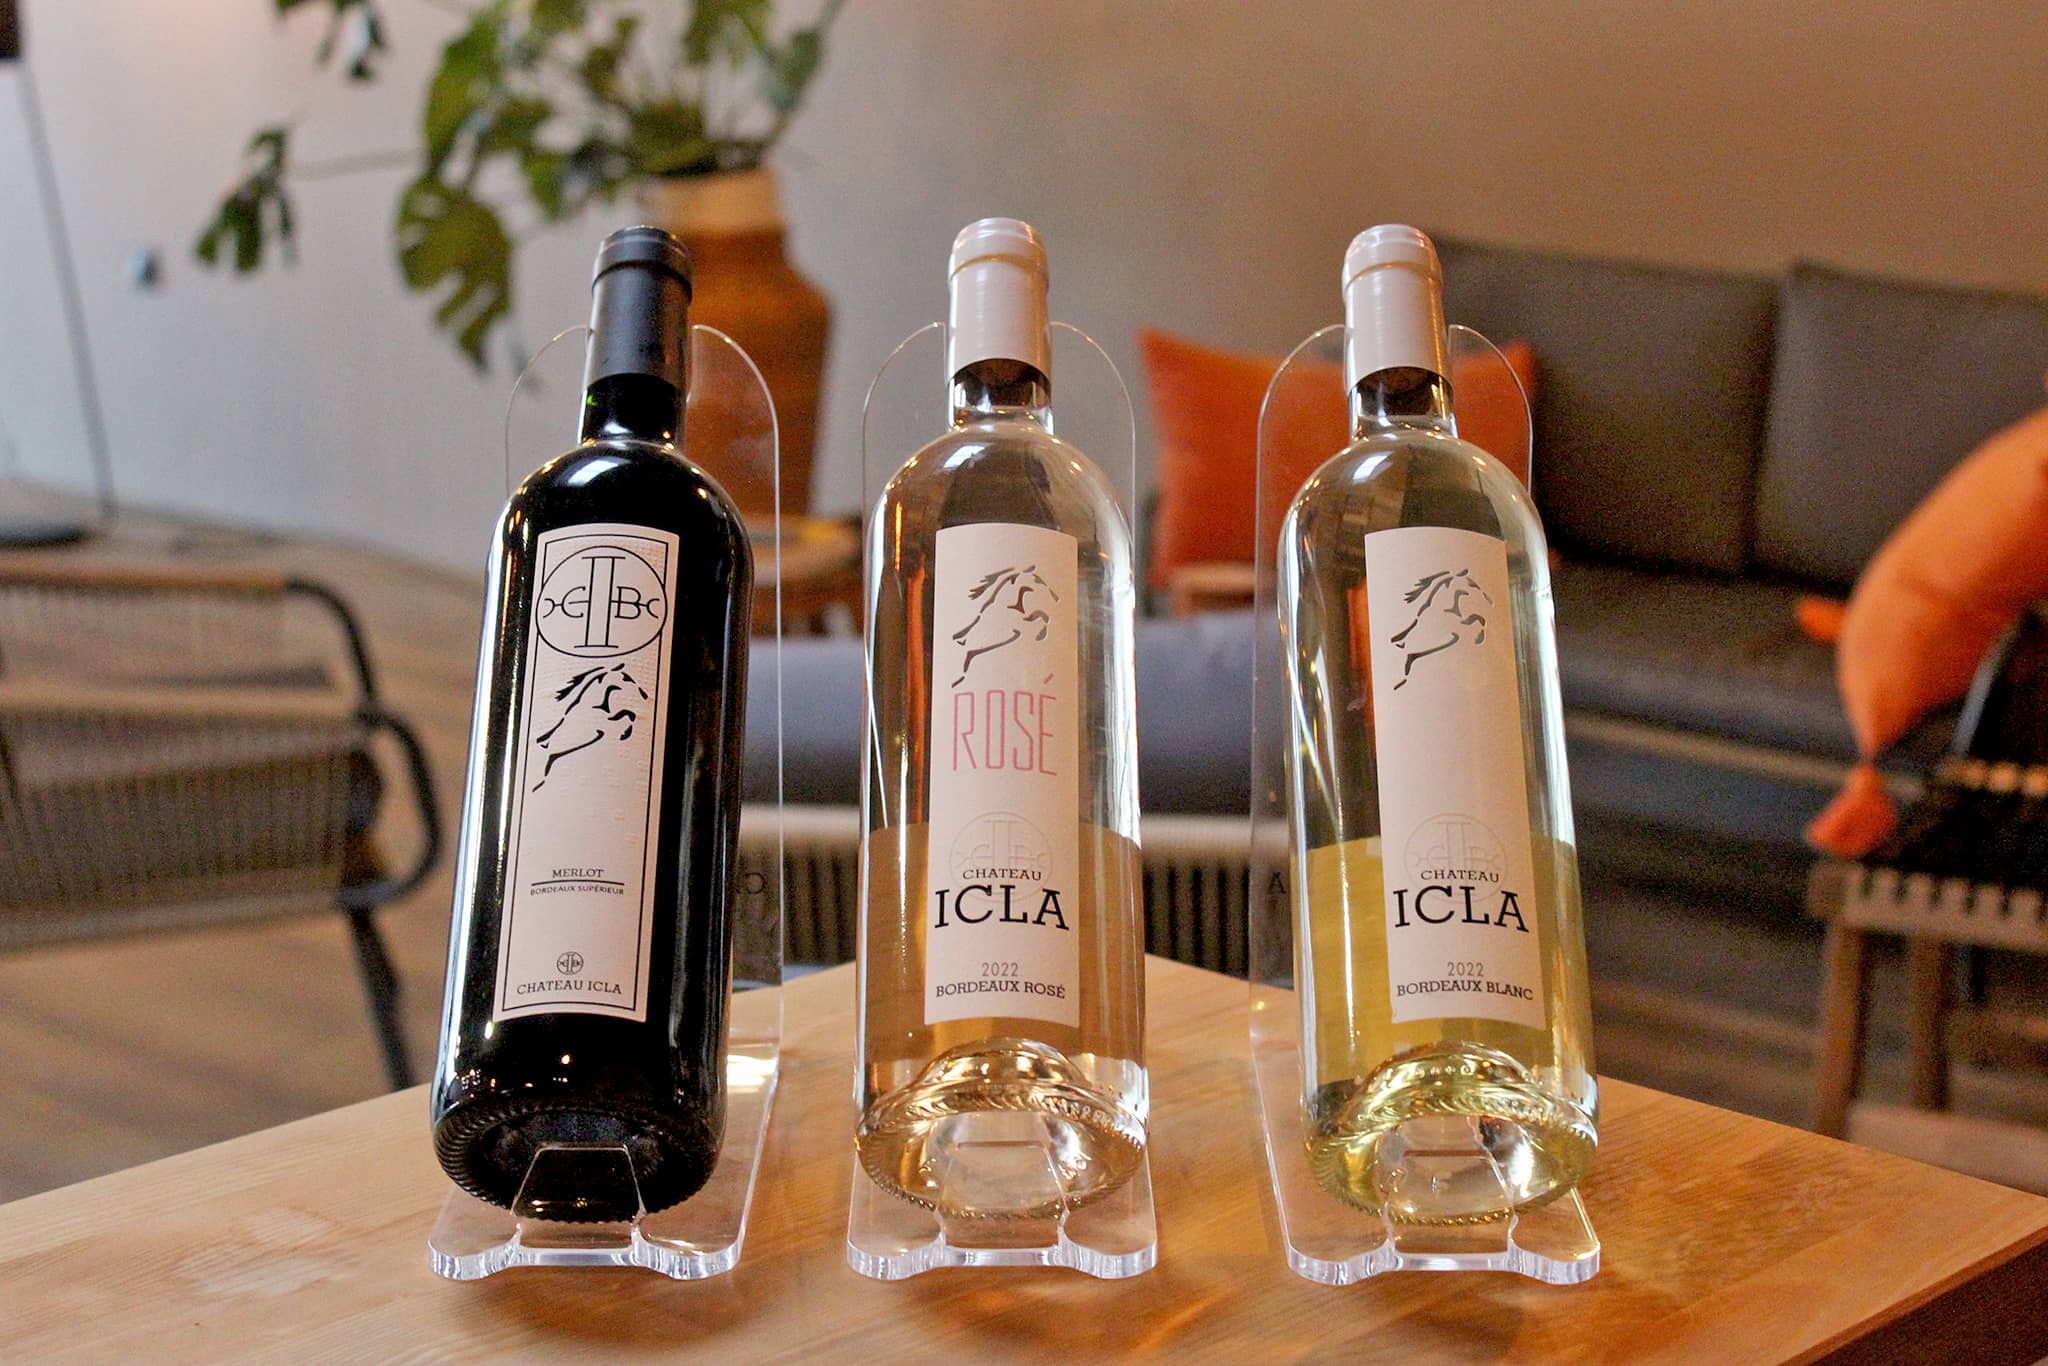 Les vins du Château ICLA